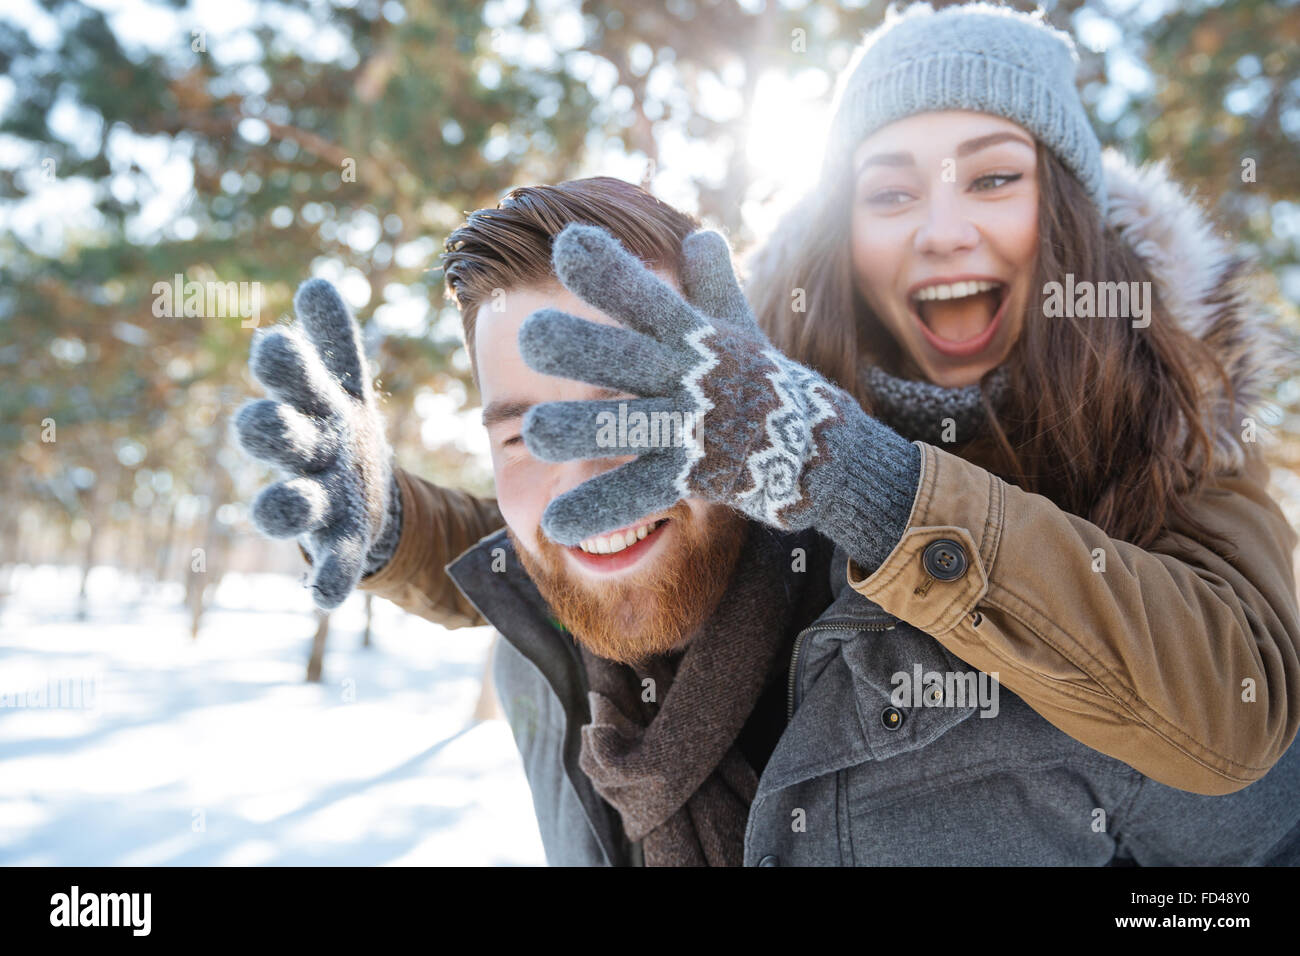 Fröhliche junge Paare, die Spaß in Winter park Stockfoto